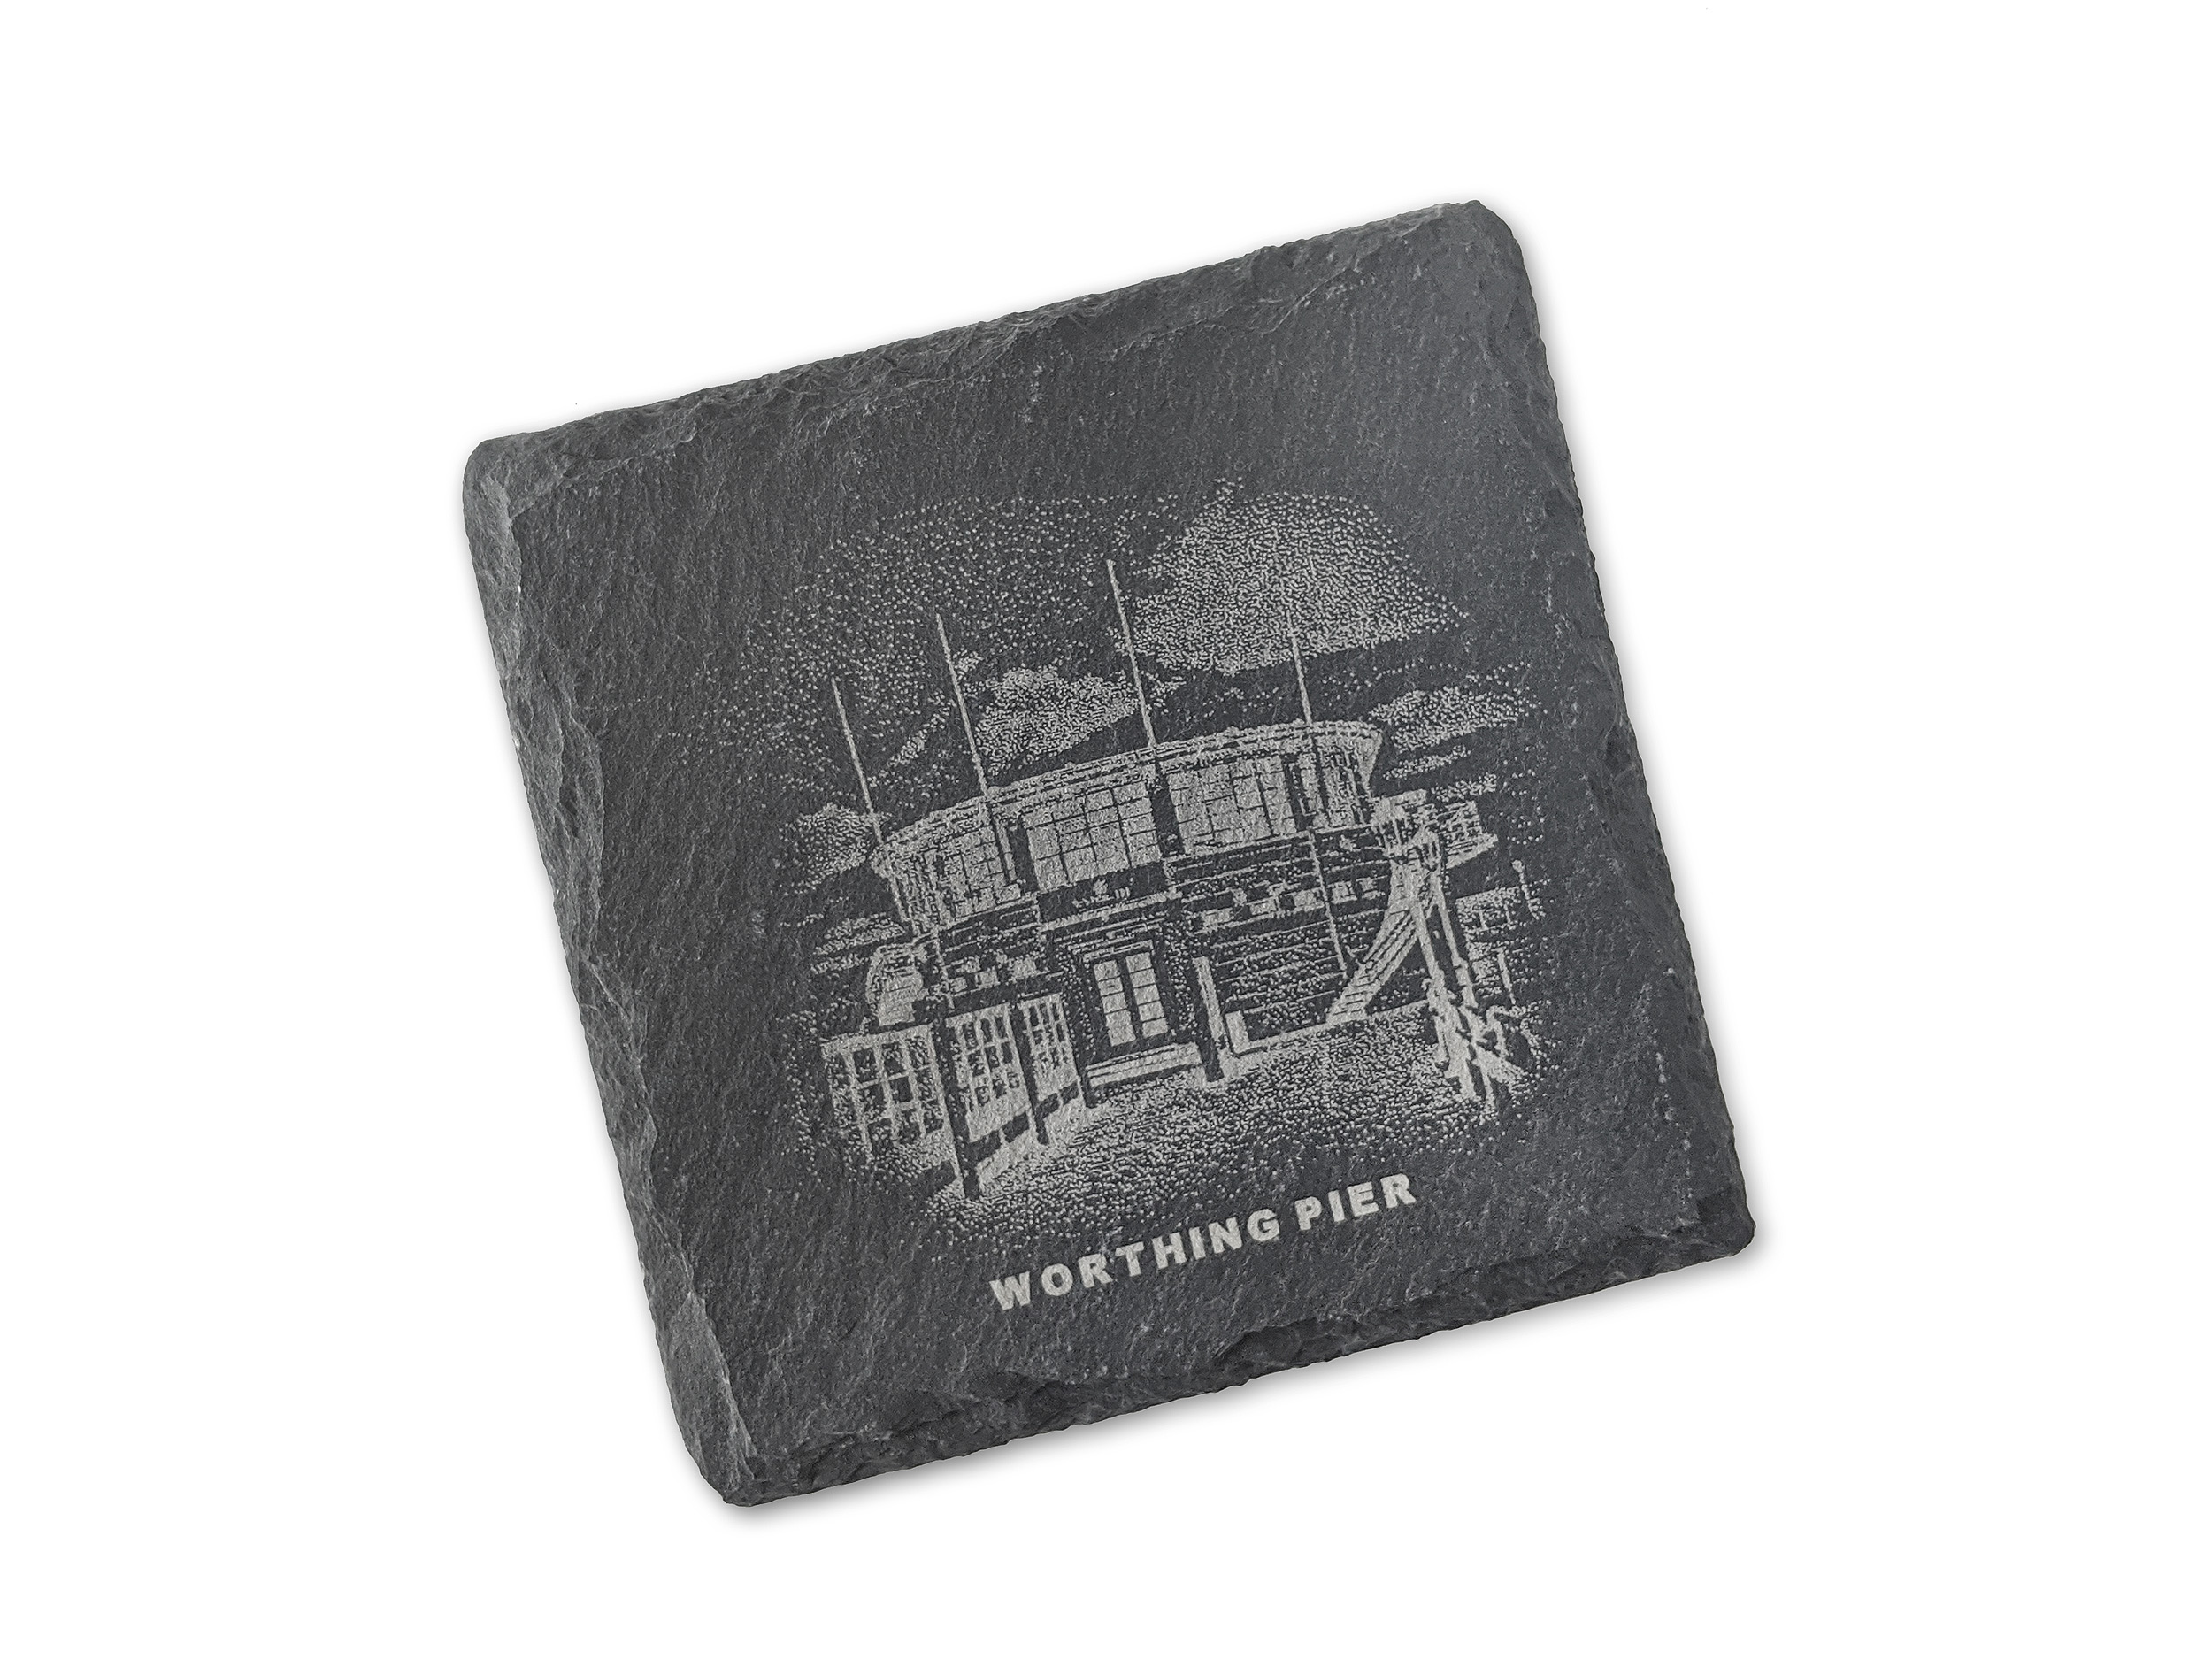 Worthing Pier Southern Pavilion - Iconic Worthing Landmark Coasters - Laser Engraved Slate Coasters